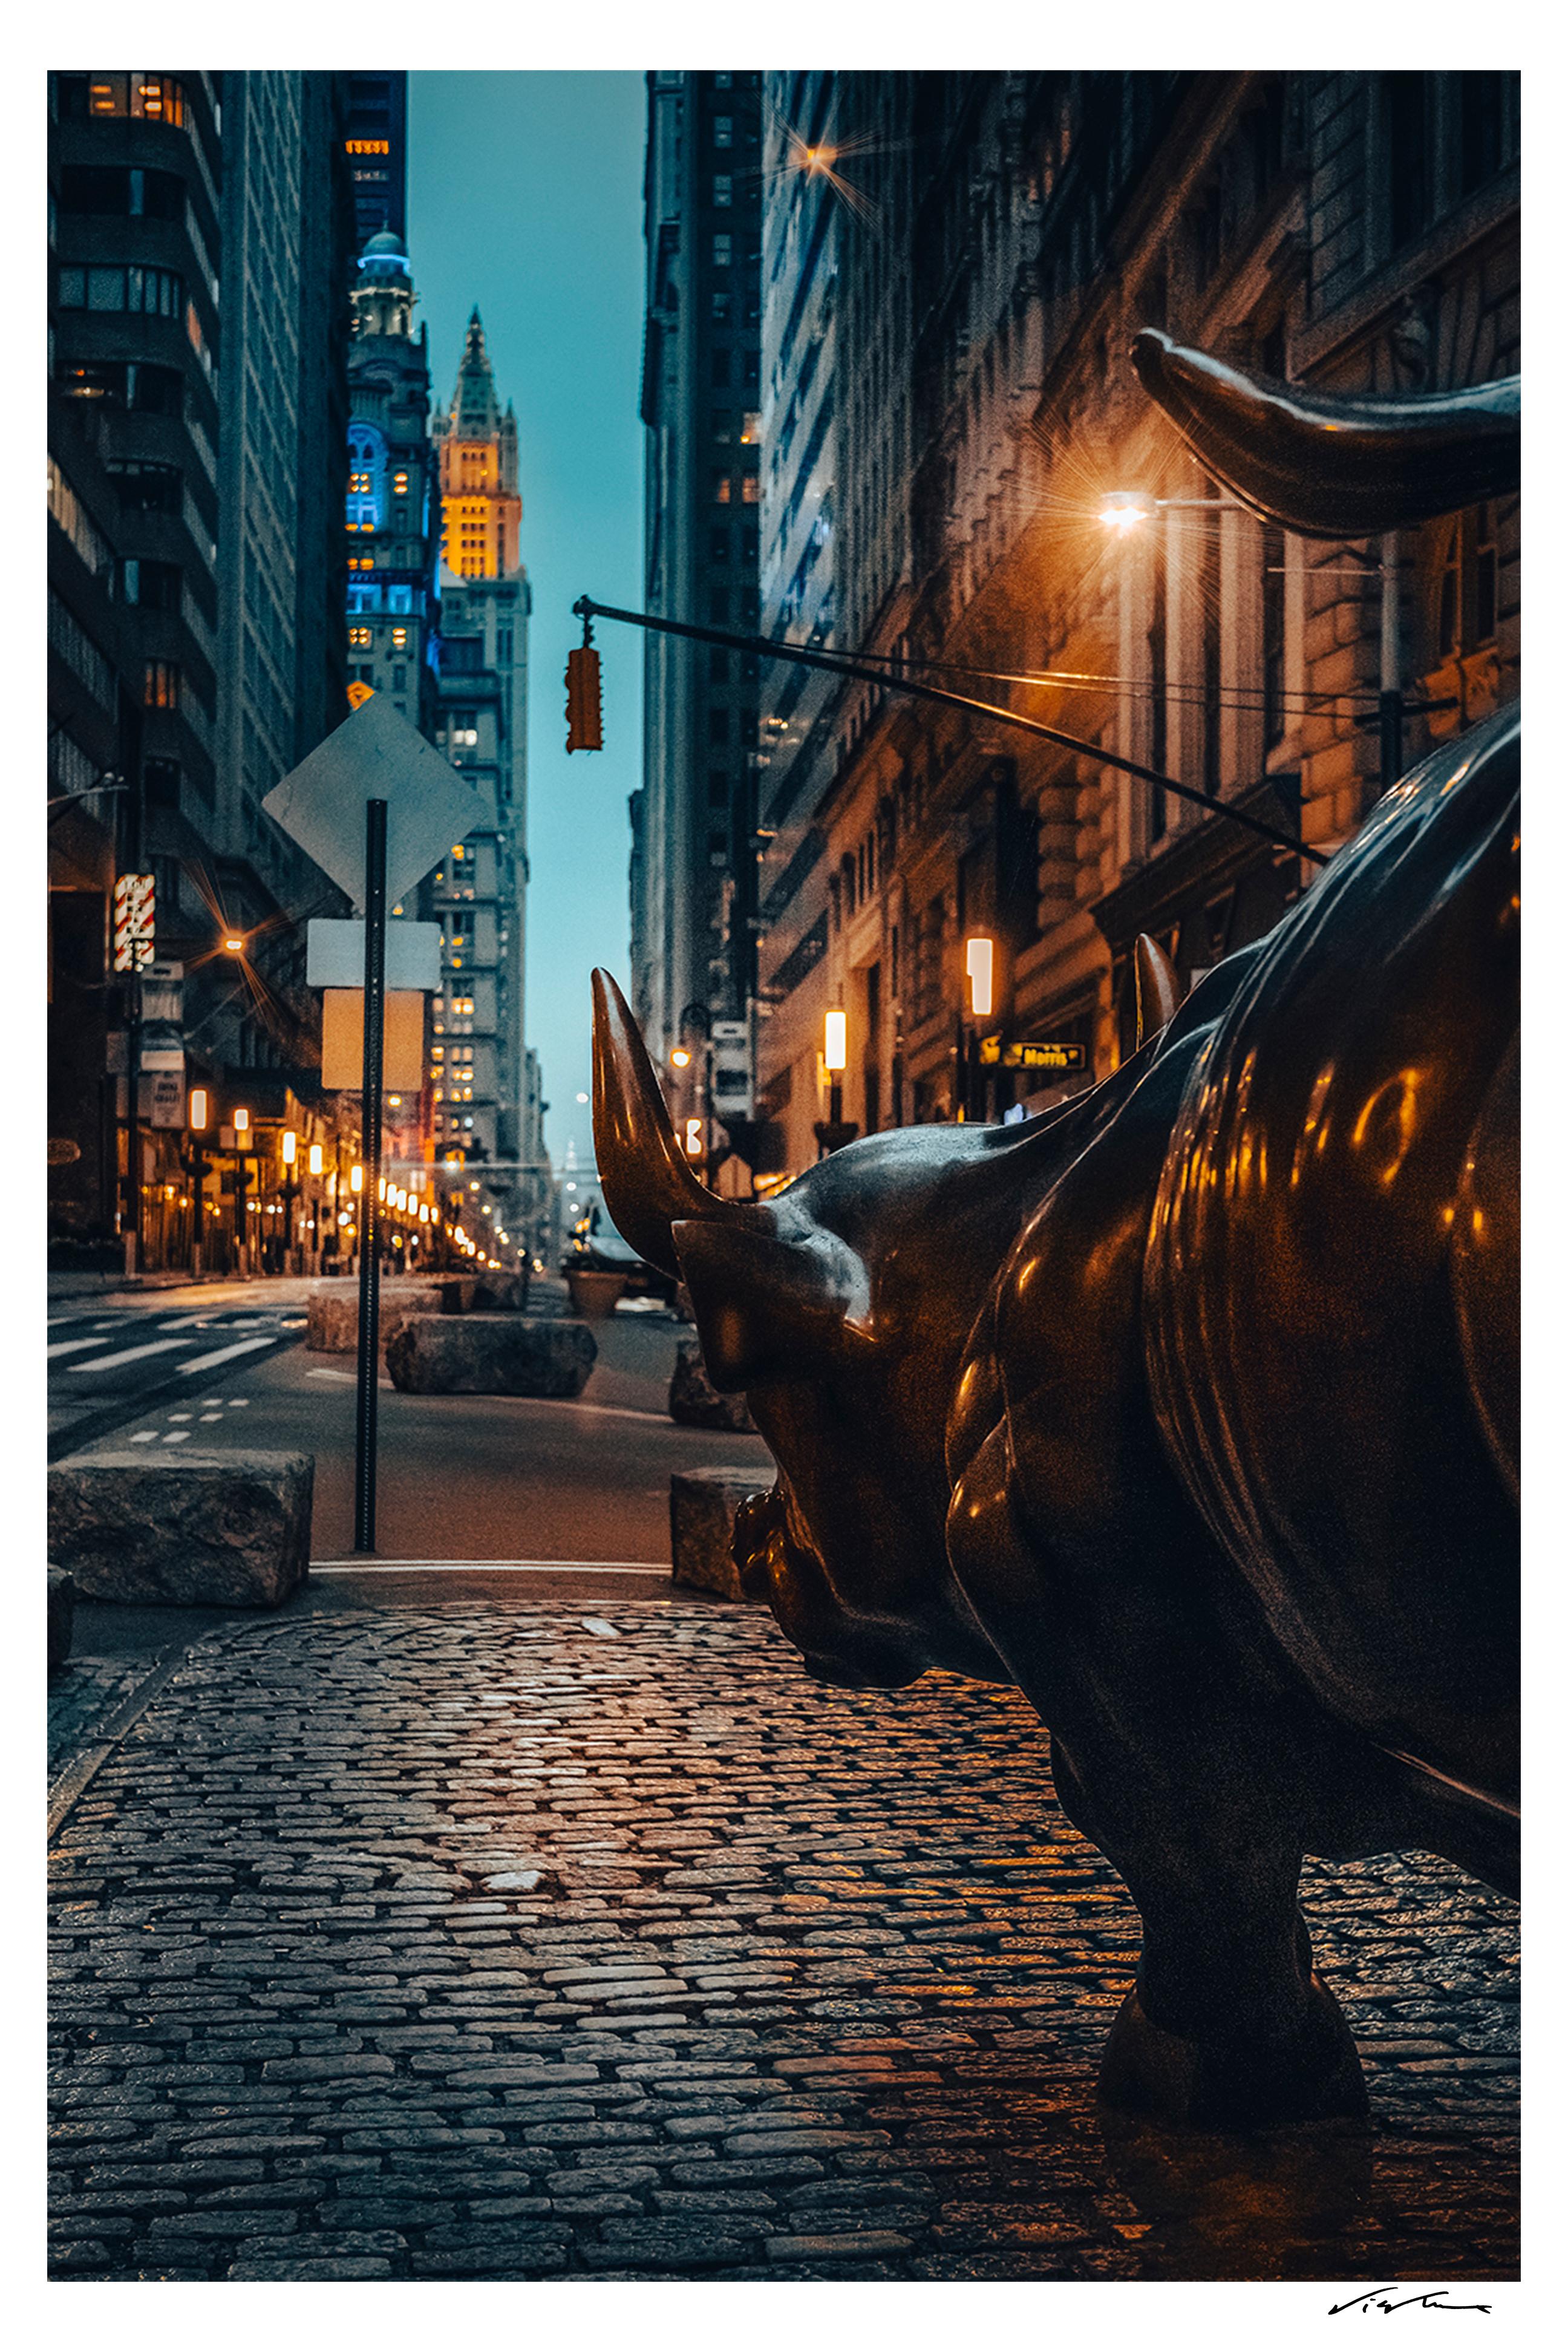 Wall Street Bull – NYC Photography, 54 Zoll x36 Zoll, signiert, limitierte Auflage von 5 Stück (Schwarz), Landscape Photograph, von Viet Chu